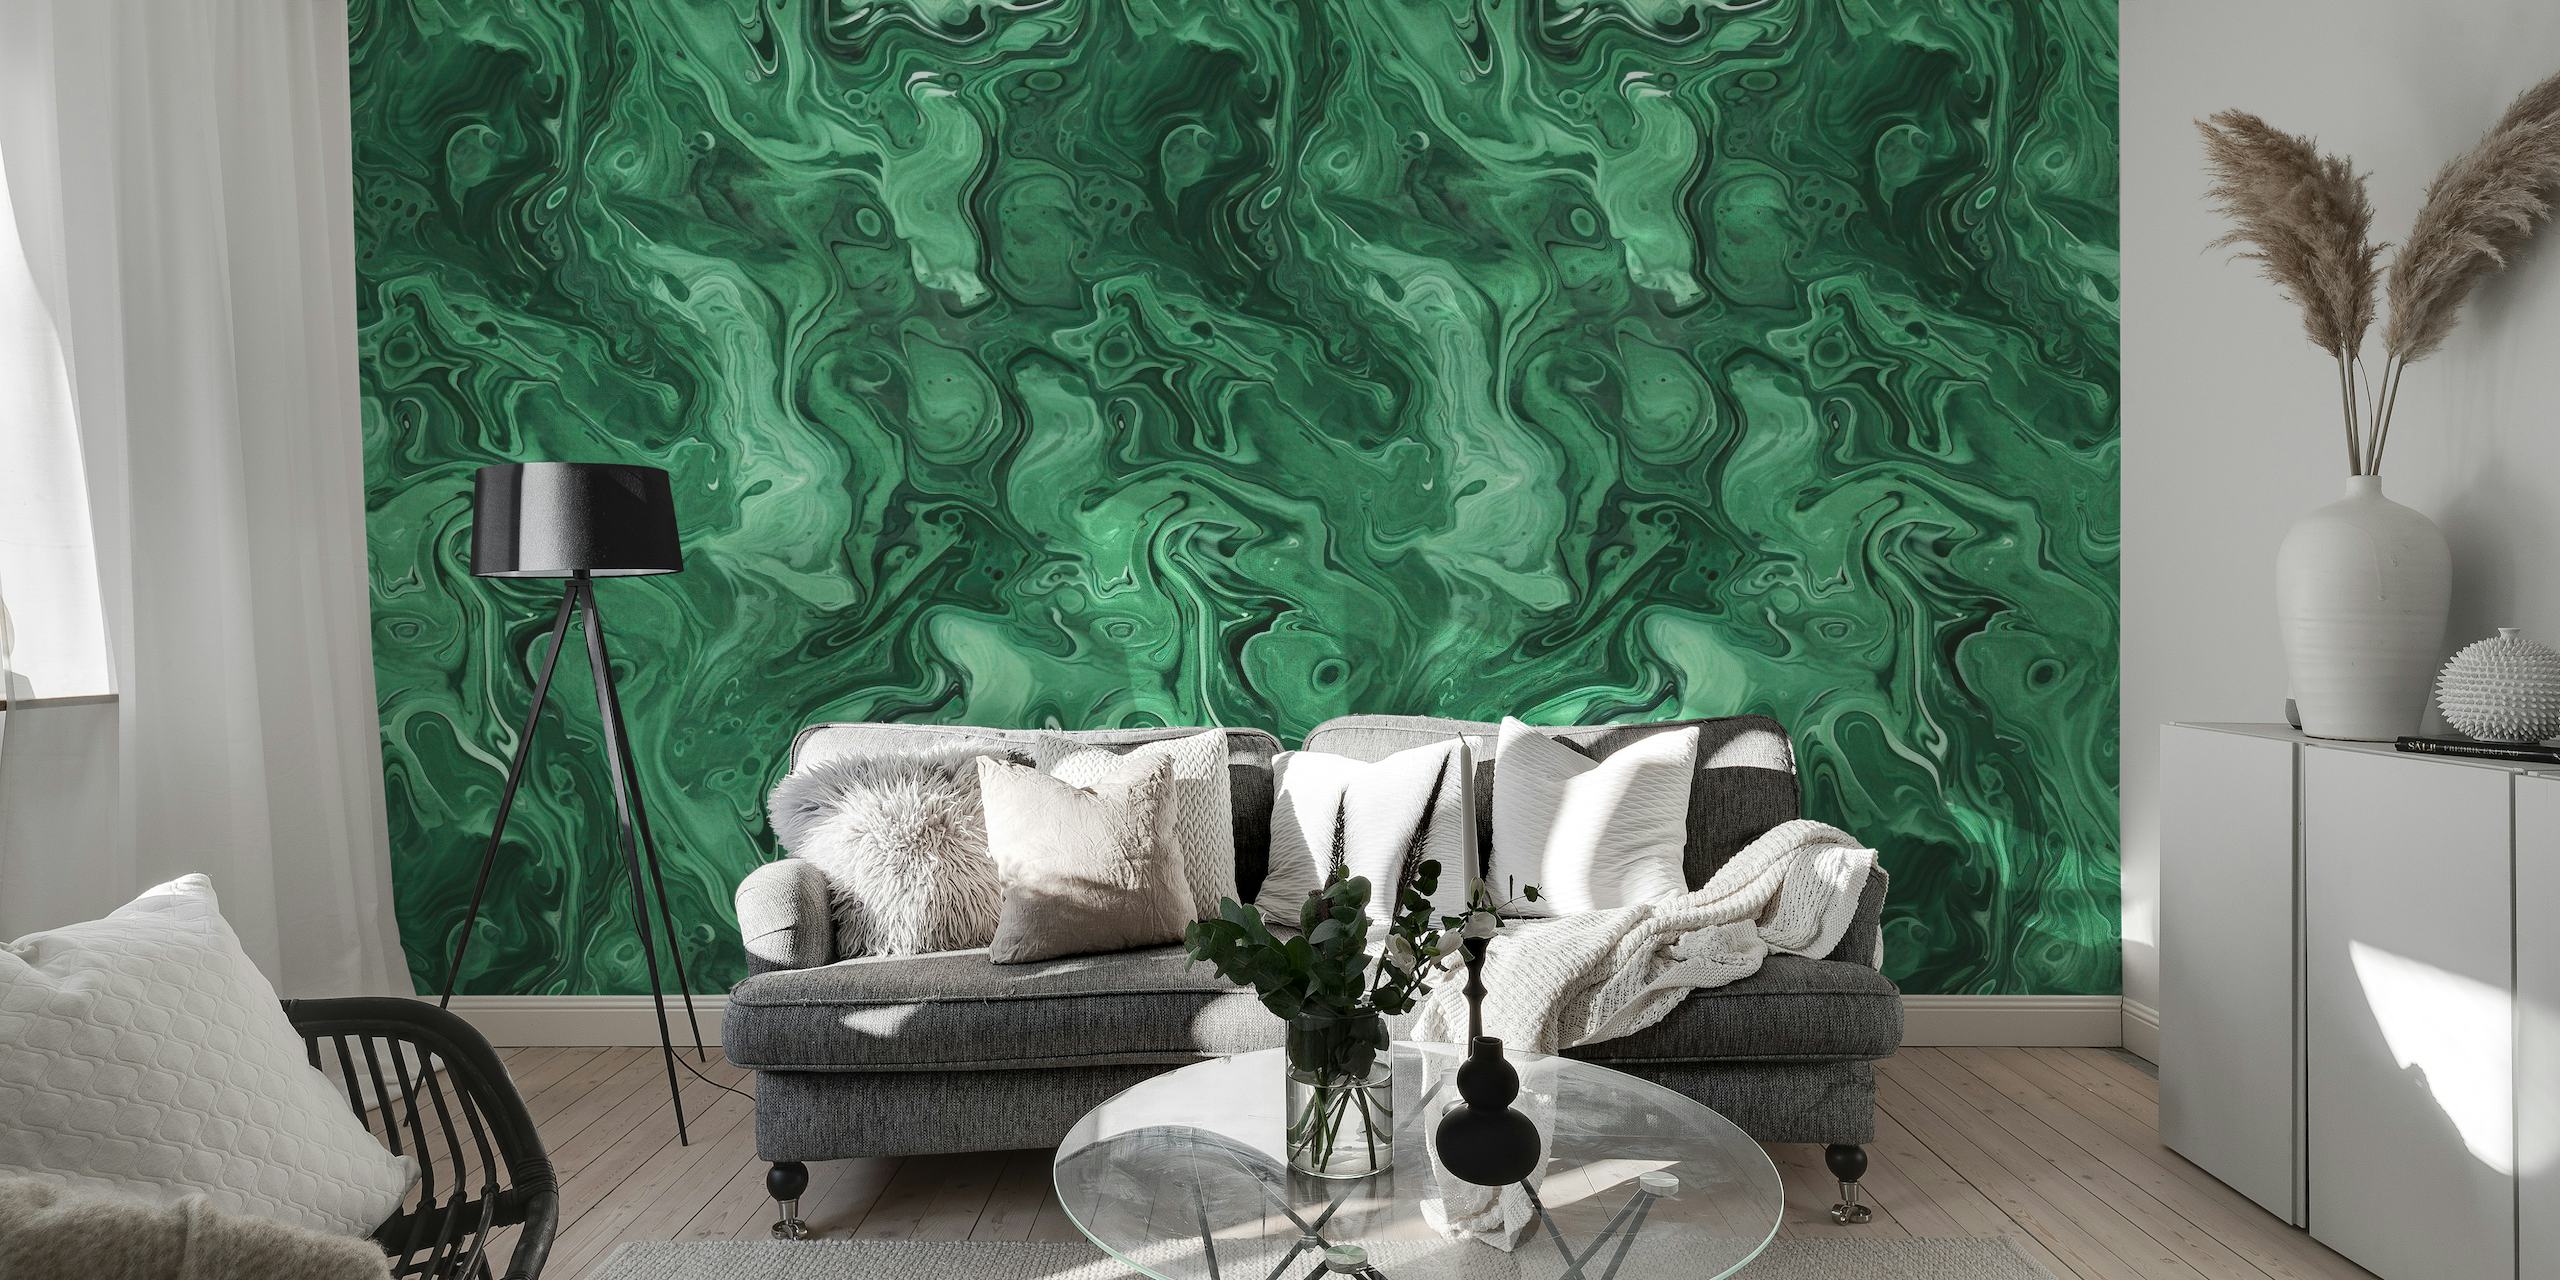 Groene malachiet edelsteen aquarel muurschildering met wervelende jade- en smaragdgroene patronen